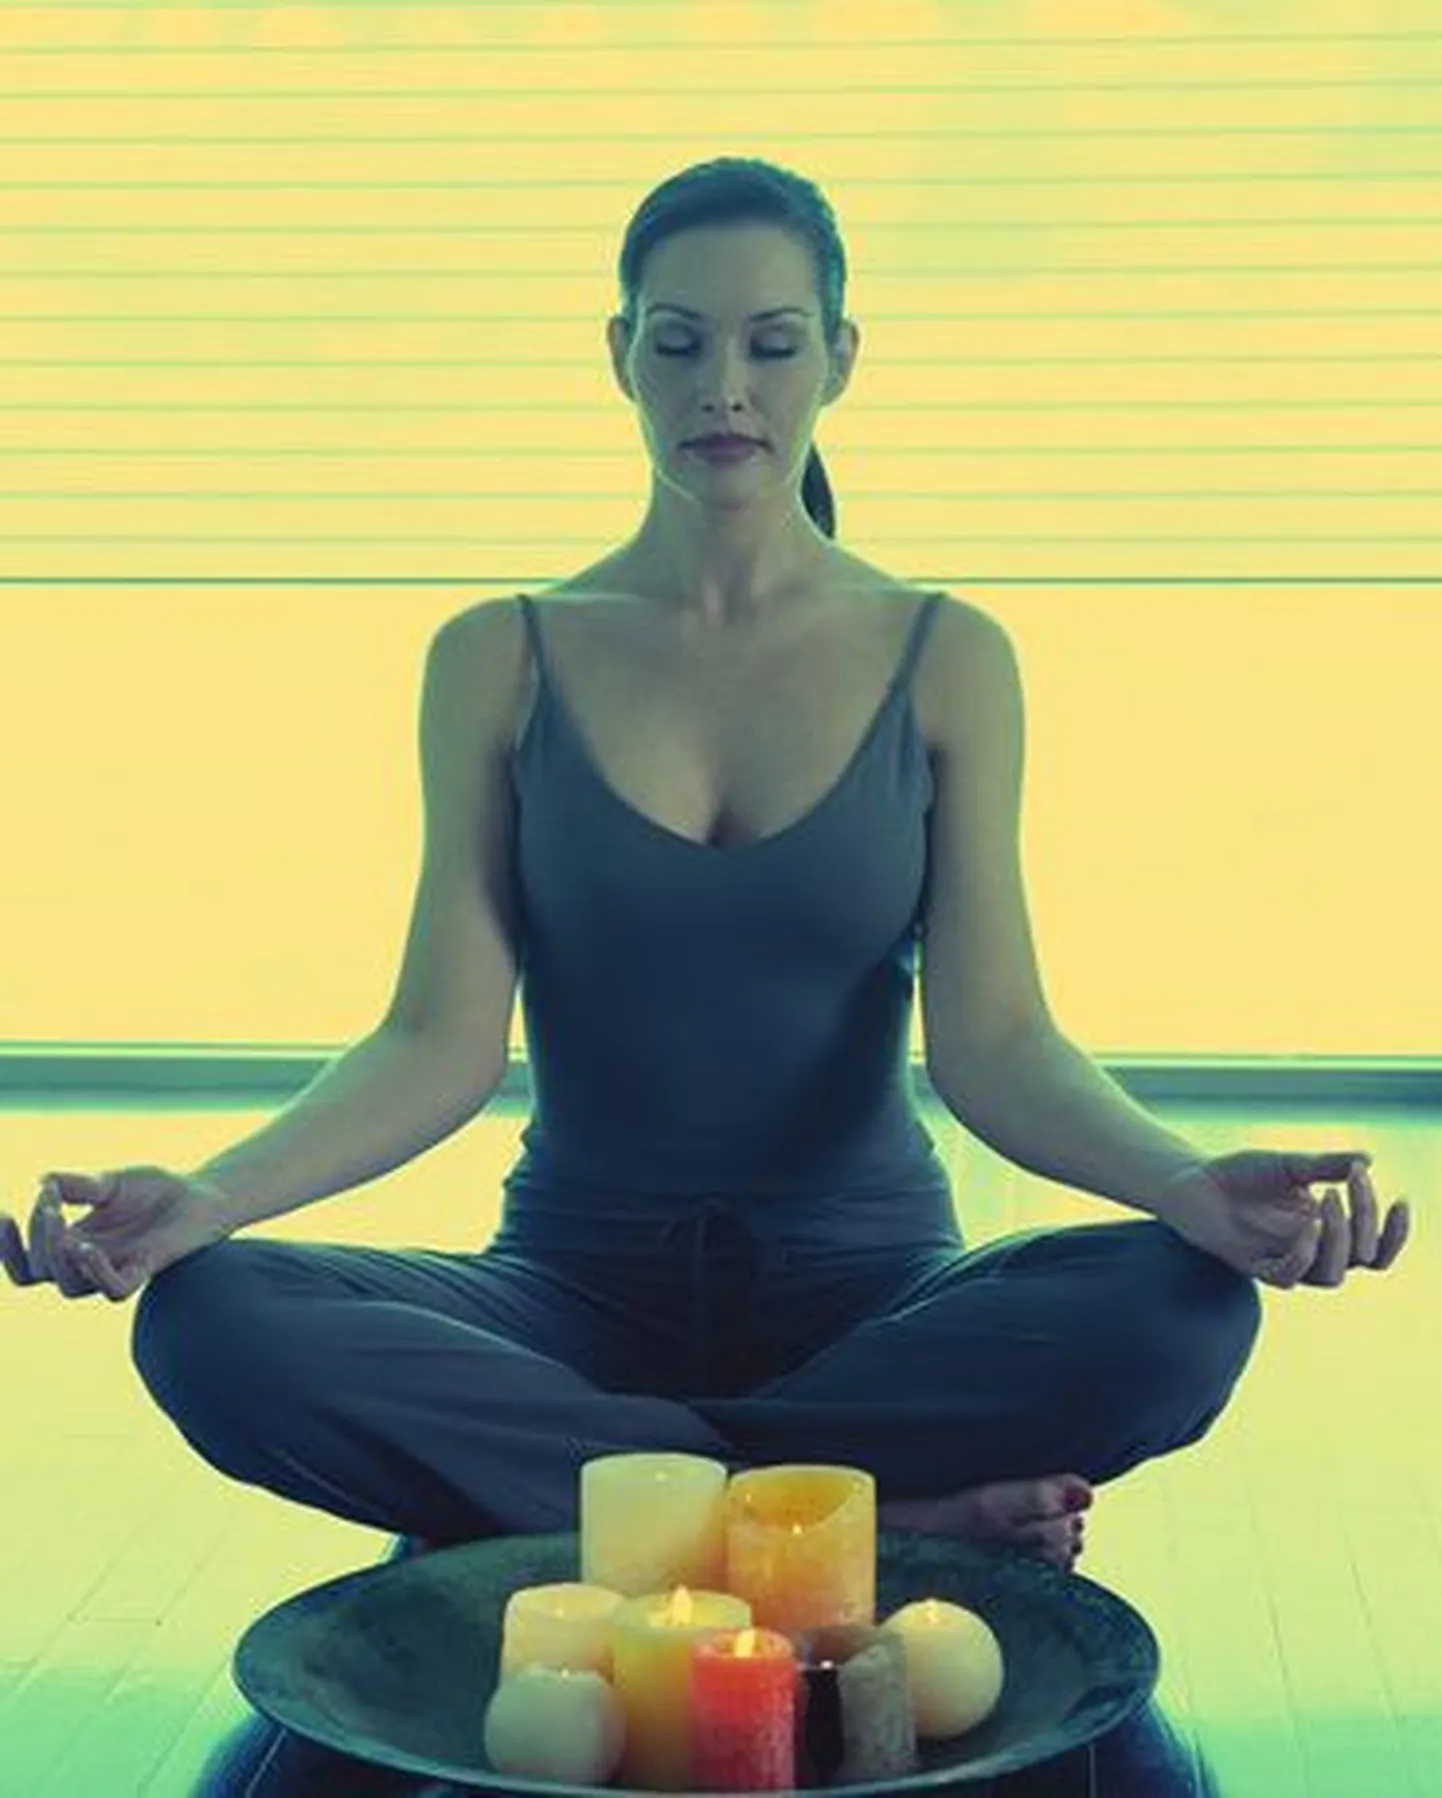 Медитация точно не повредит вашему здоровью. Снимок иллюстративный.